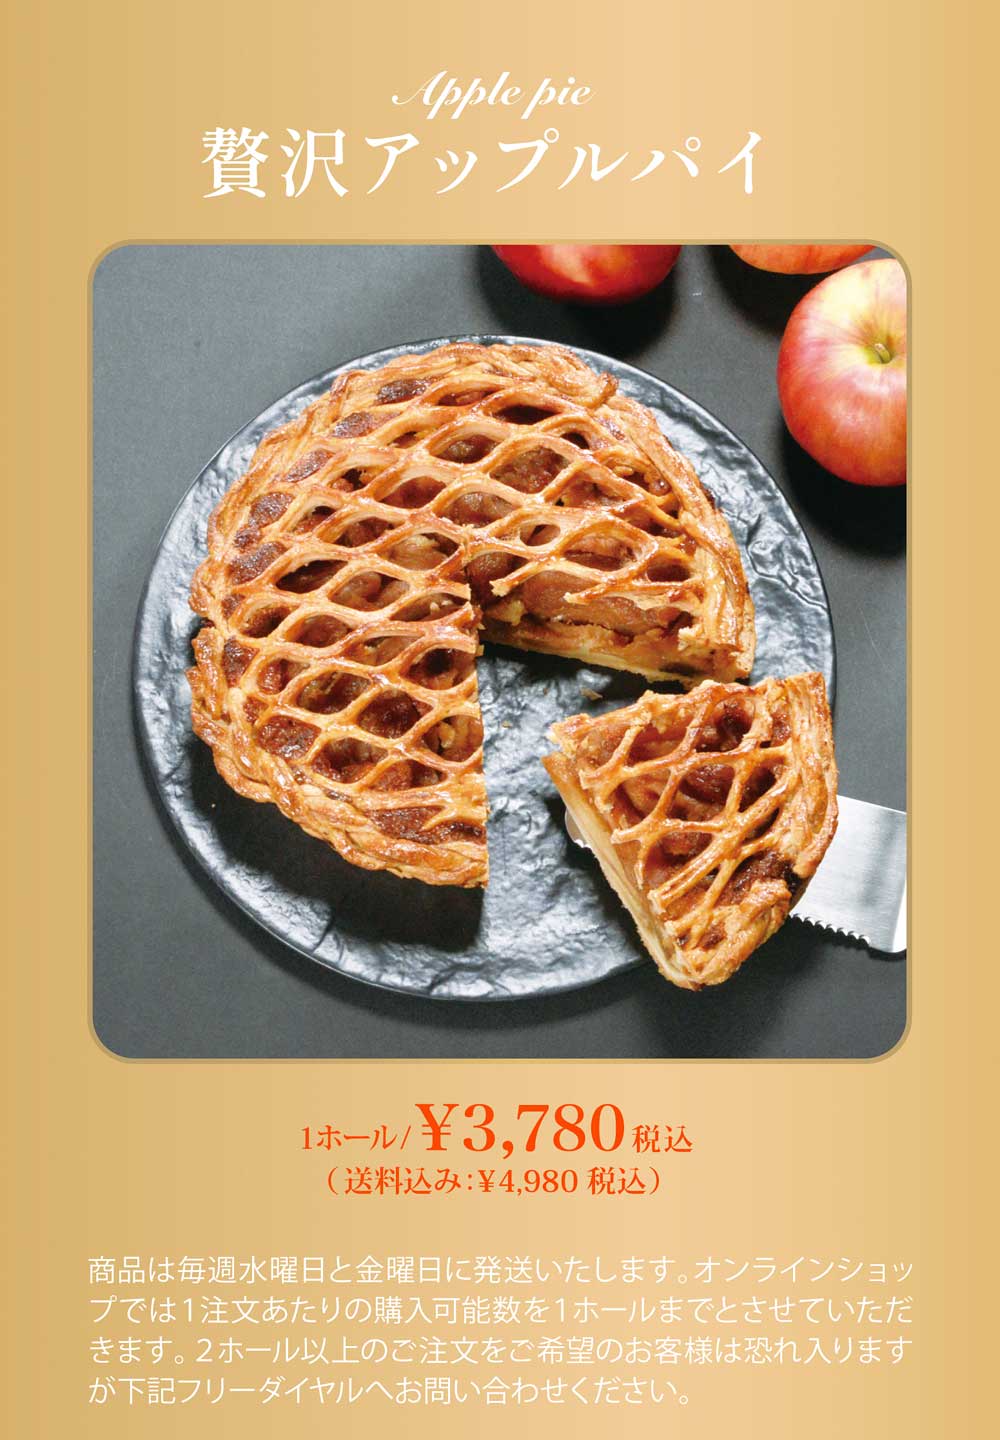 贅沢アップルパイは1ホール3,780円。(送料込み：4,980円)